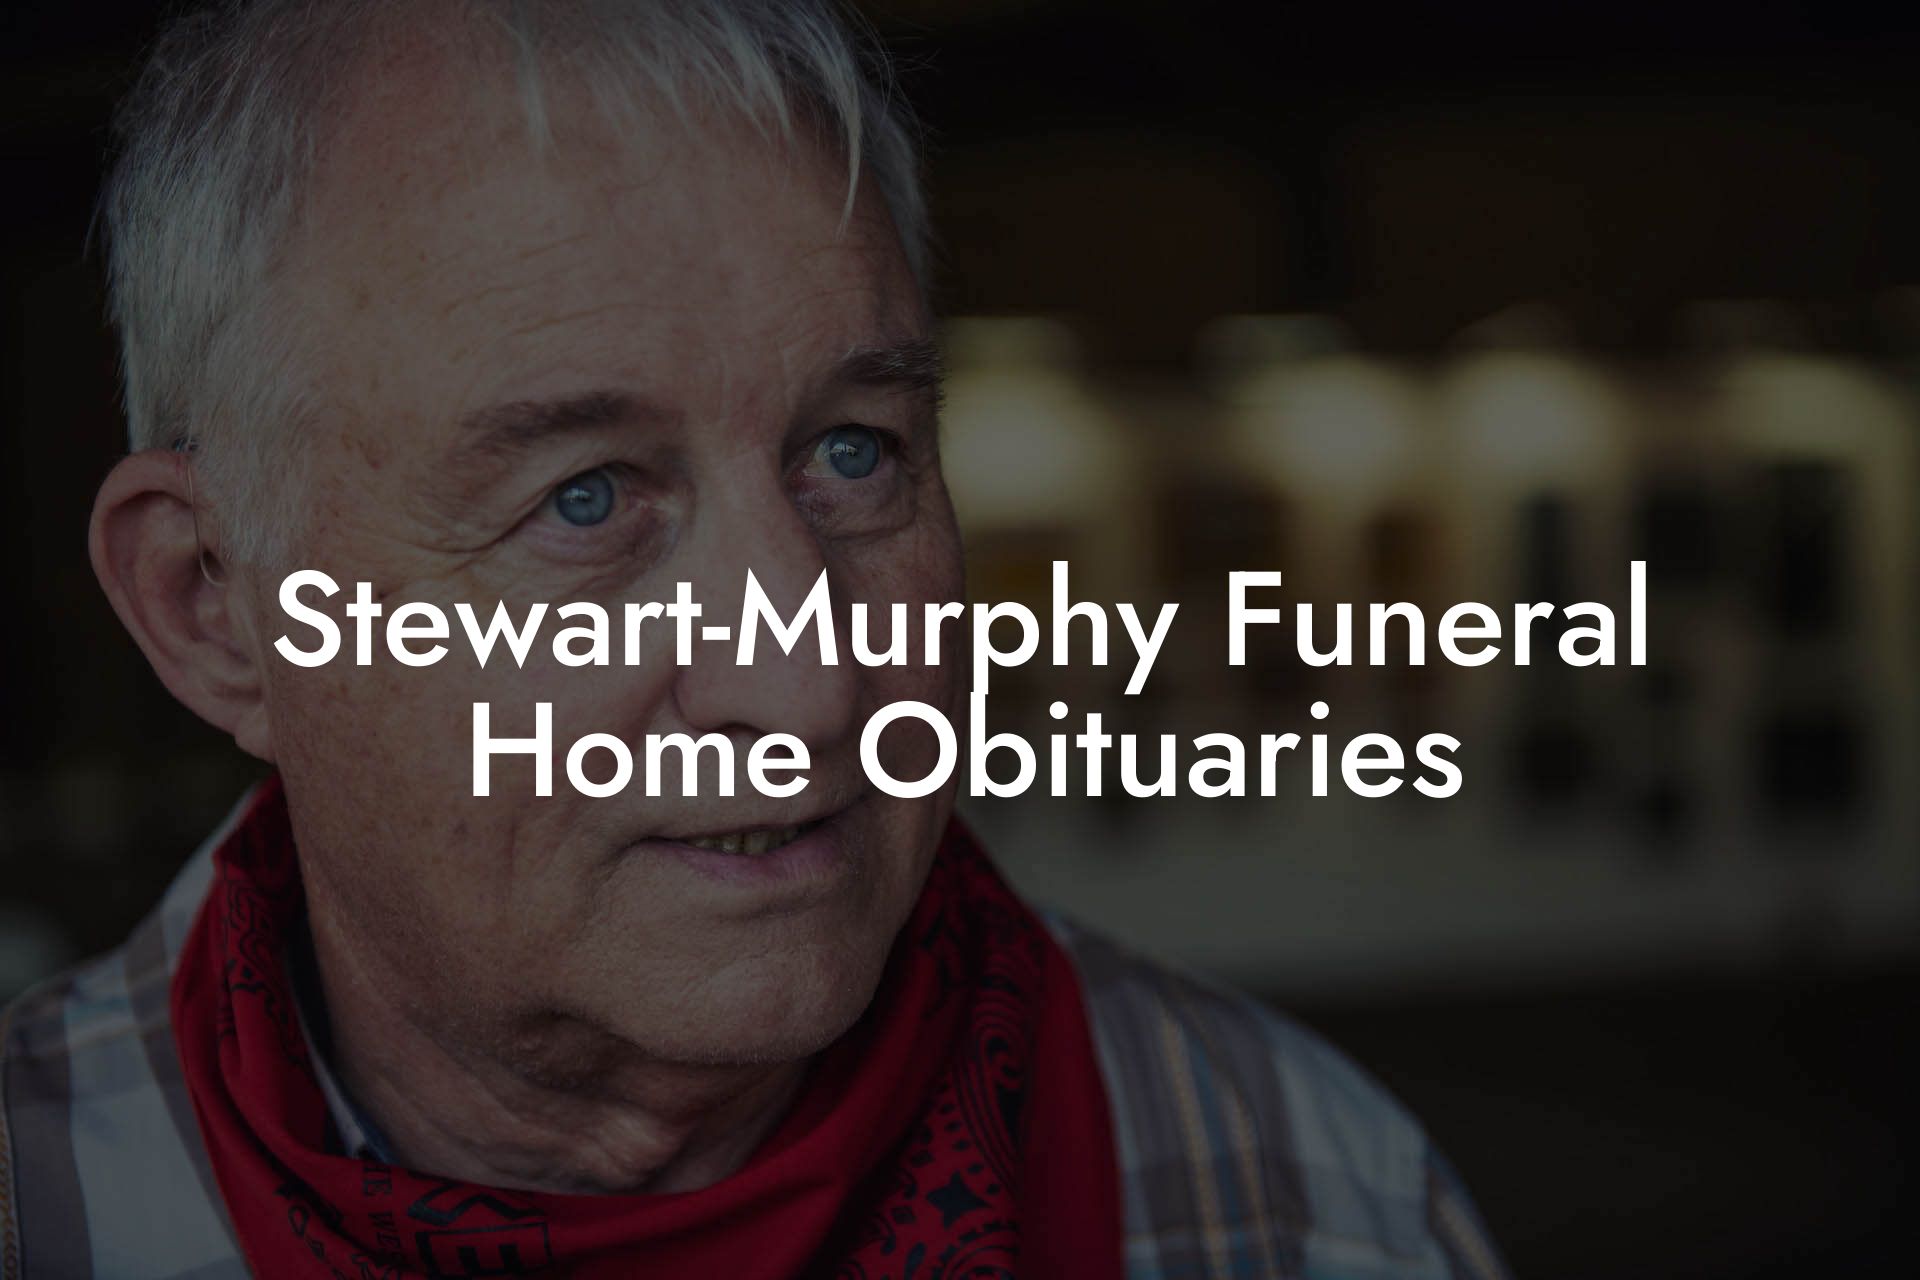 Stewart-Murphy Funeral Home Obituaries